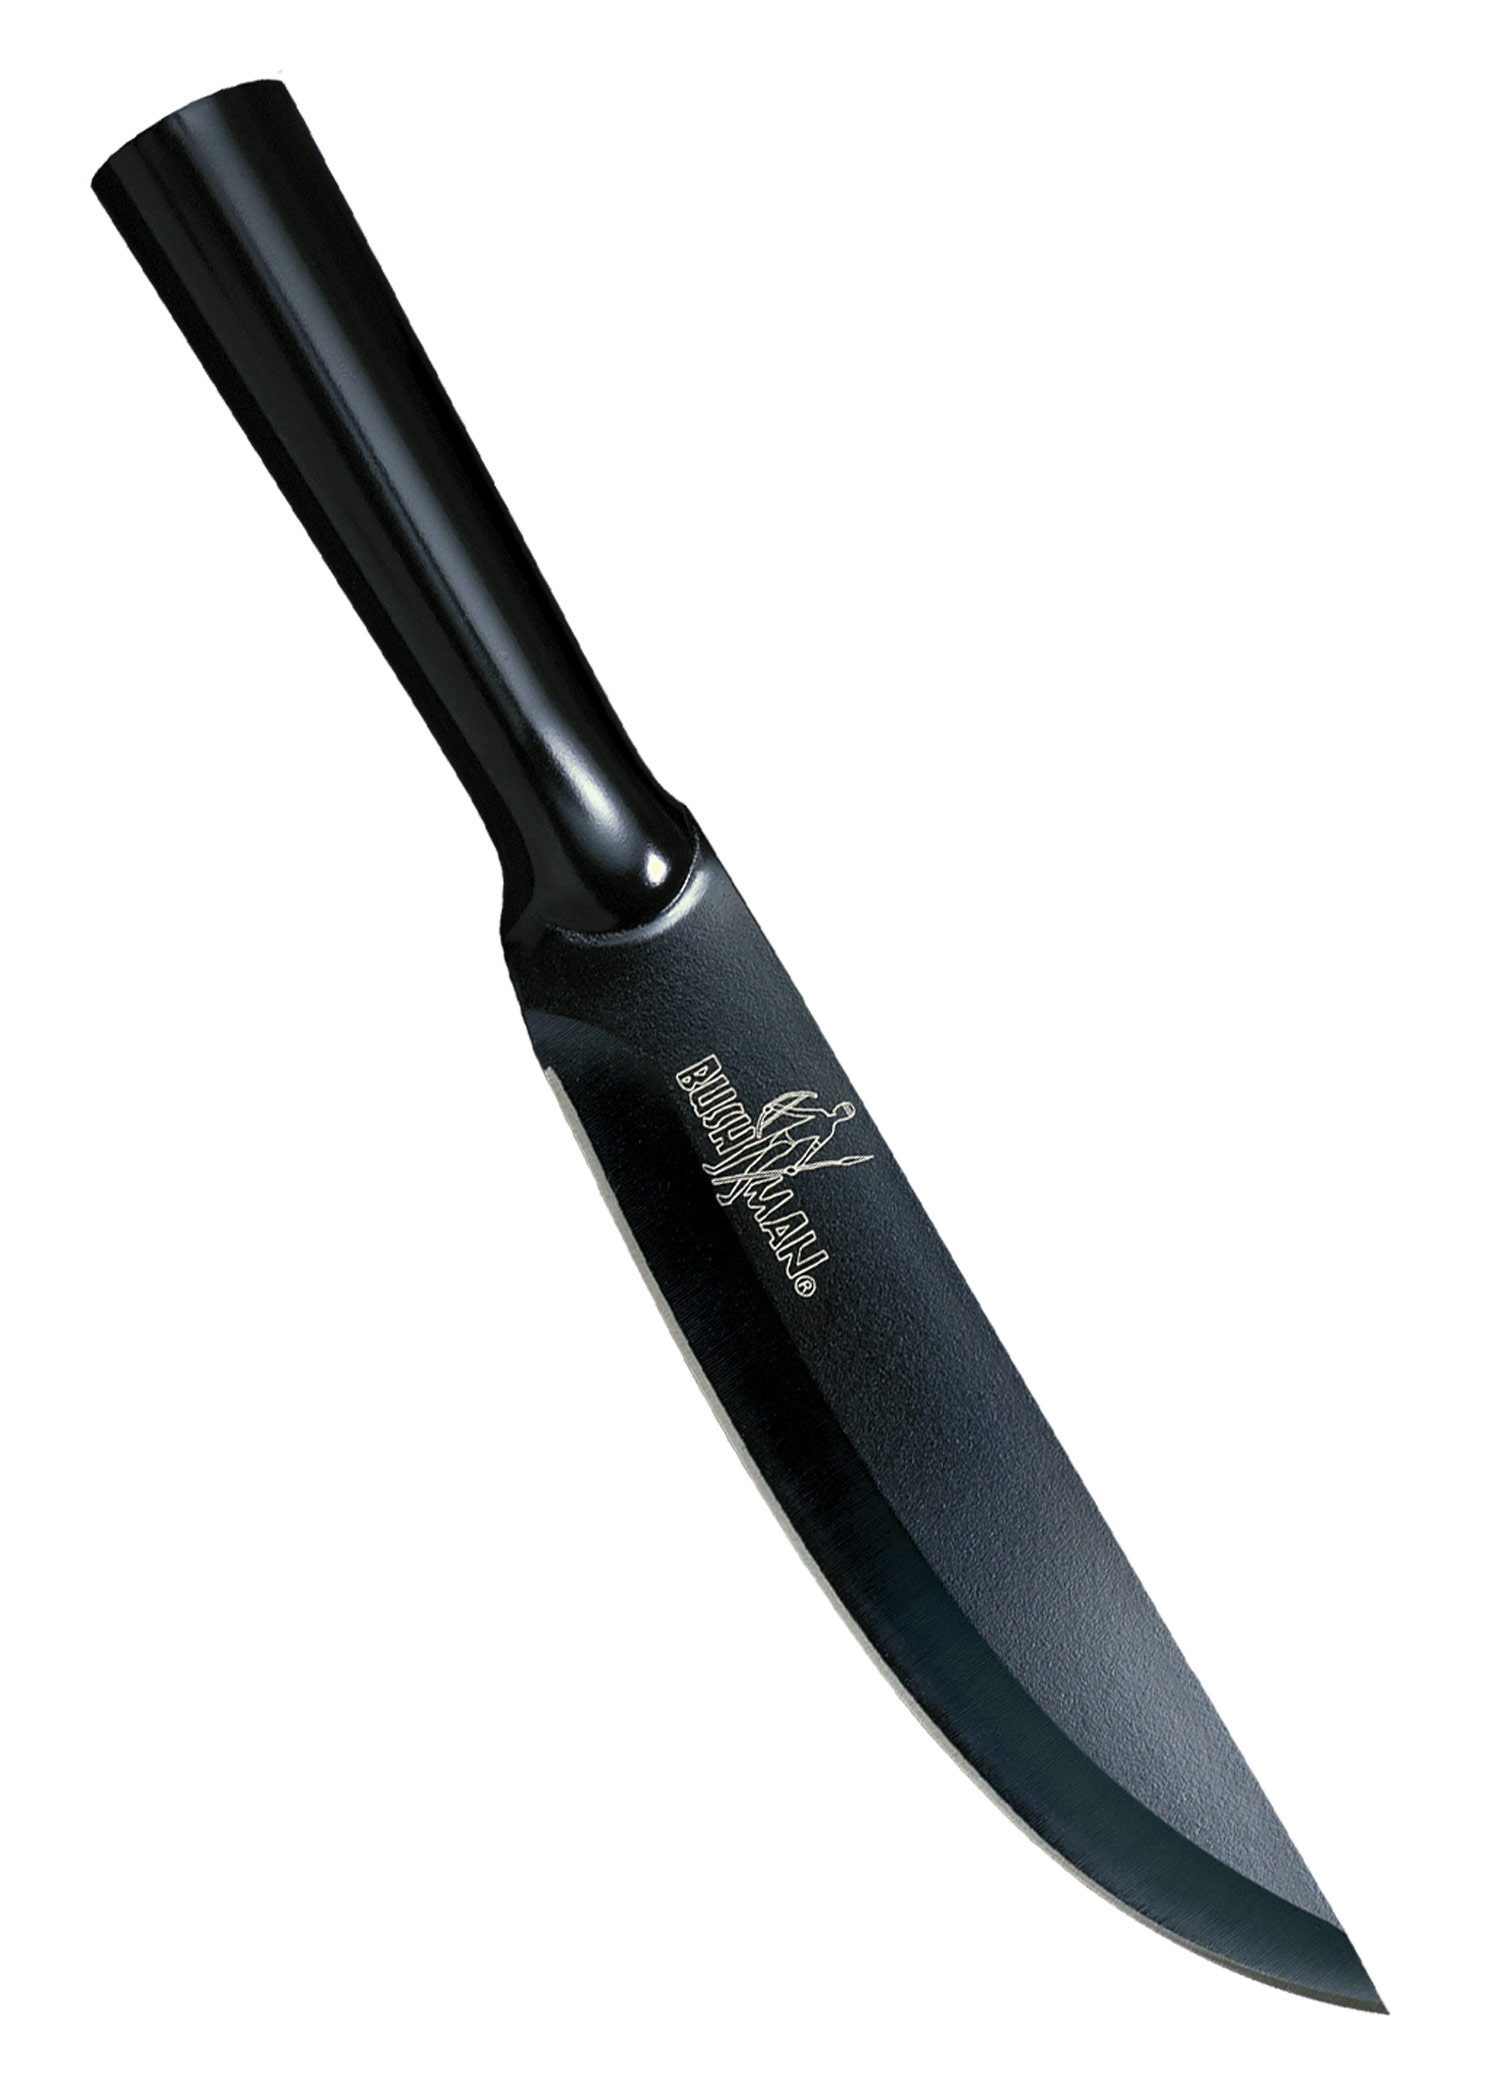 Cold Steel Survival Knife Bushman feststehendes Messer mit Hohlgriff, (1 St), Carbonstahl, Hohlgriff